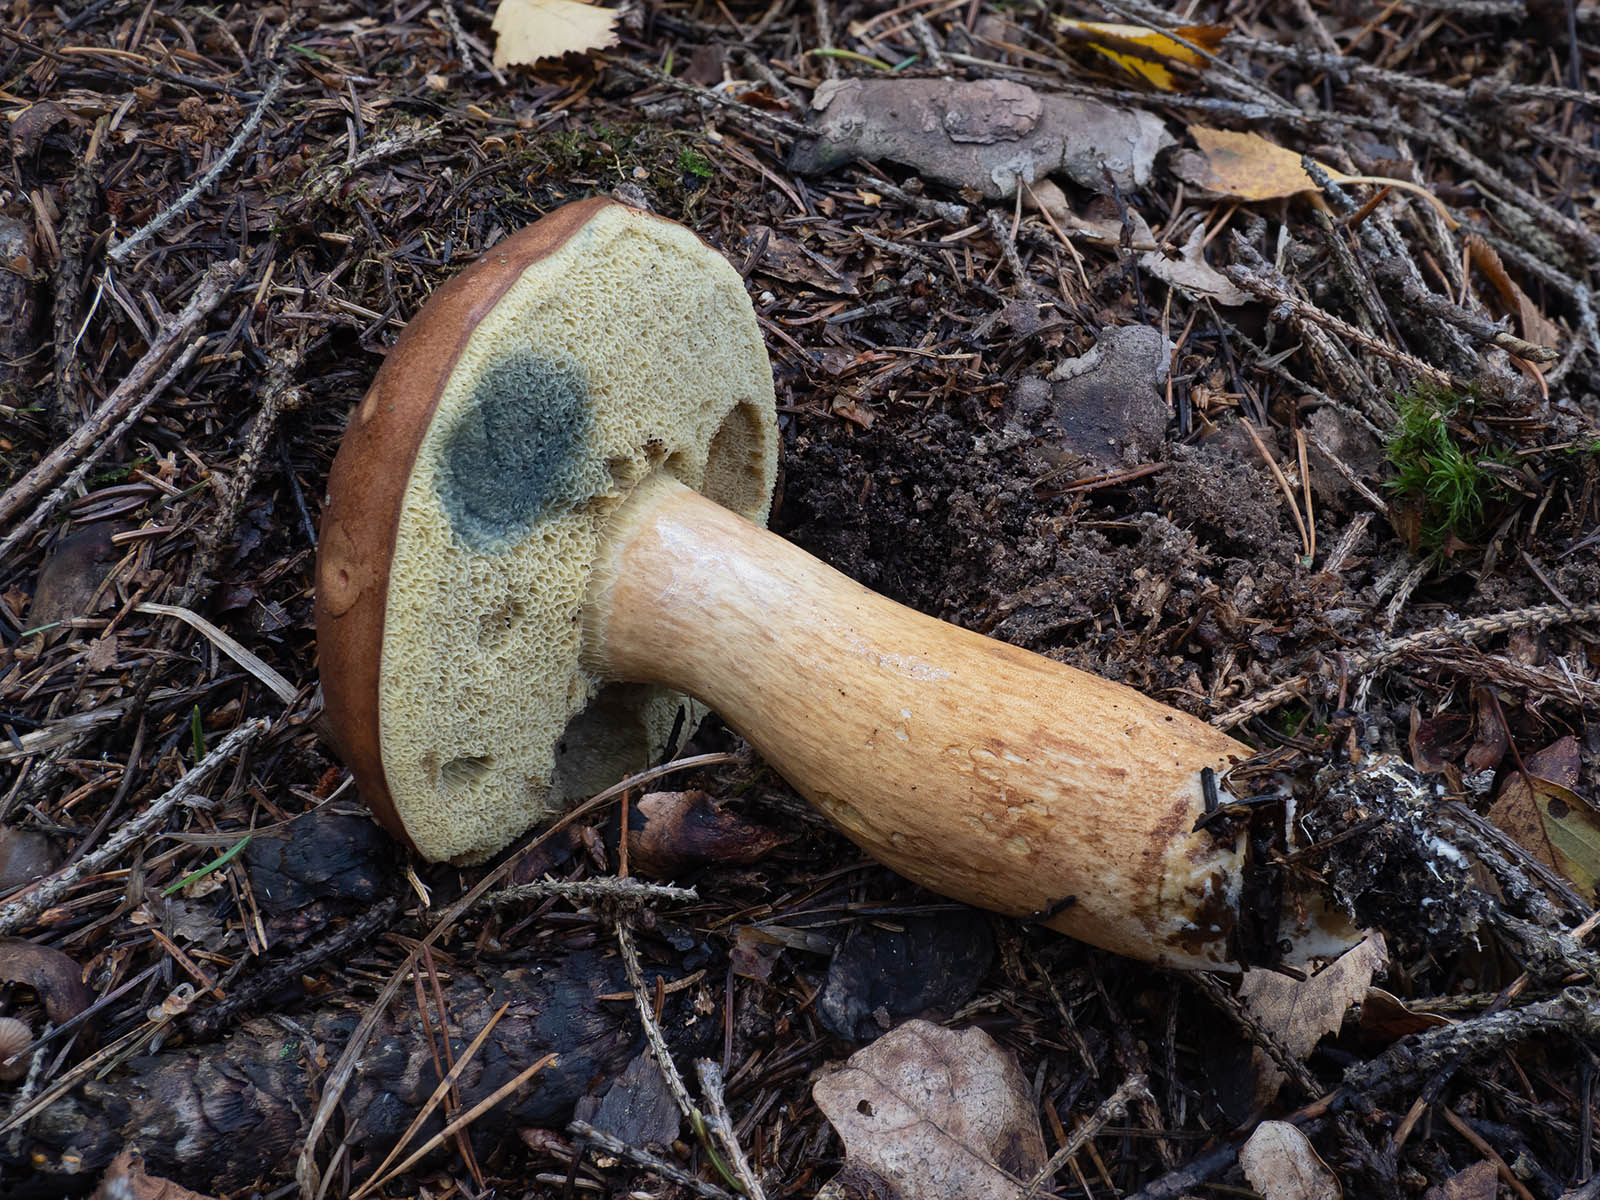 Польский гриб (Imleria badia)Польский гриб (Imleria badia) в природном парке G?rv?ln, Стокгольм, октябрь 2020 года. Автор фото: Сутормина Марина